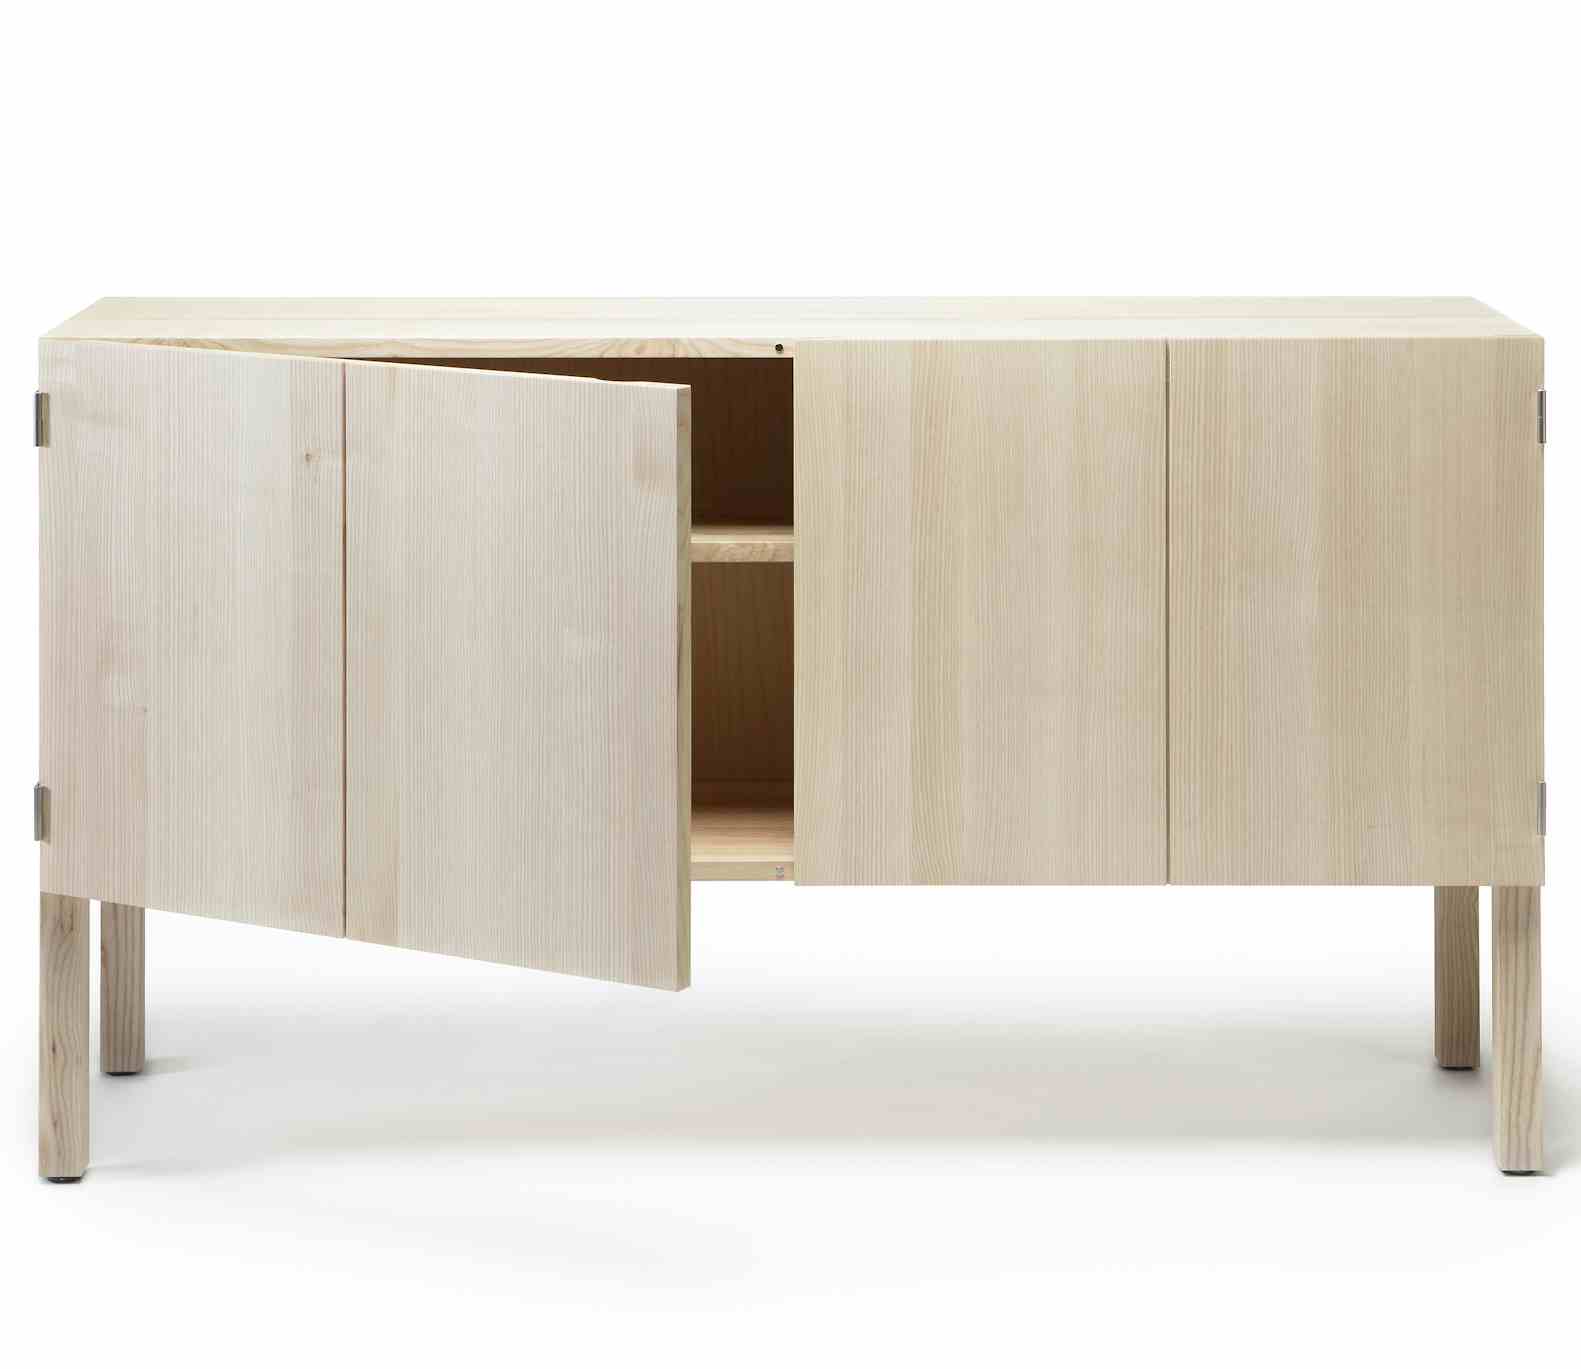 Nikari furniture arkitecture low cabinet haute living